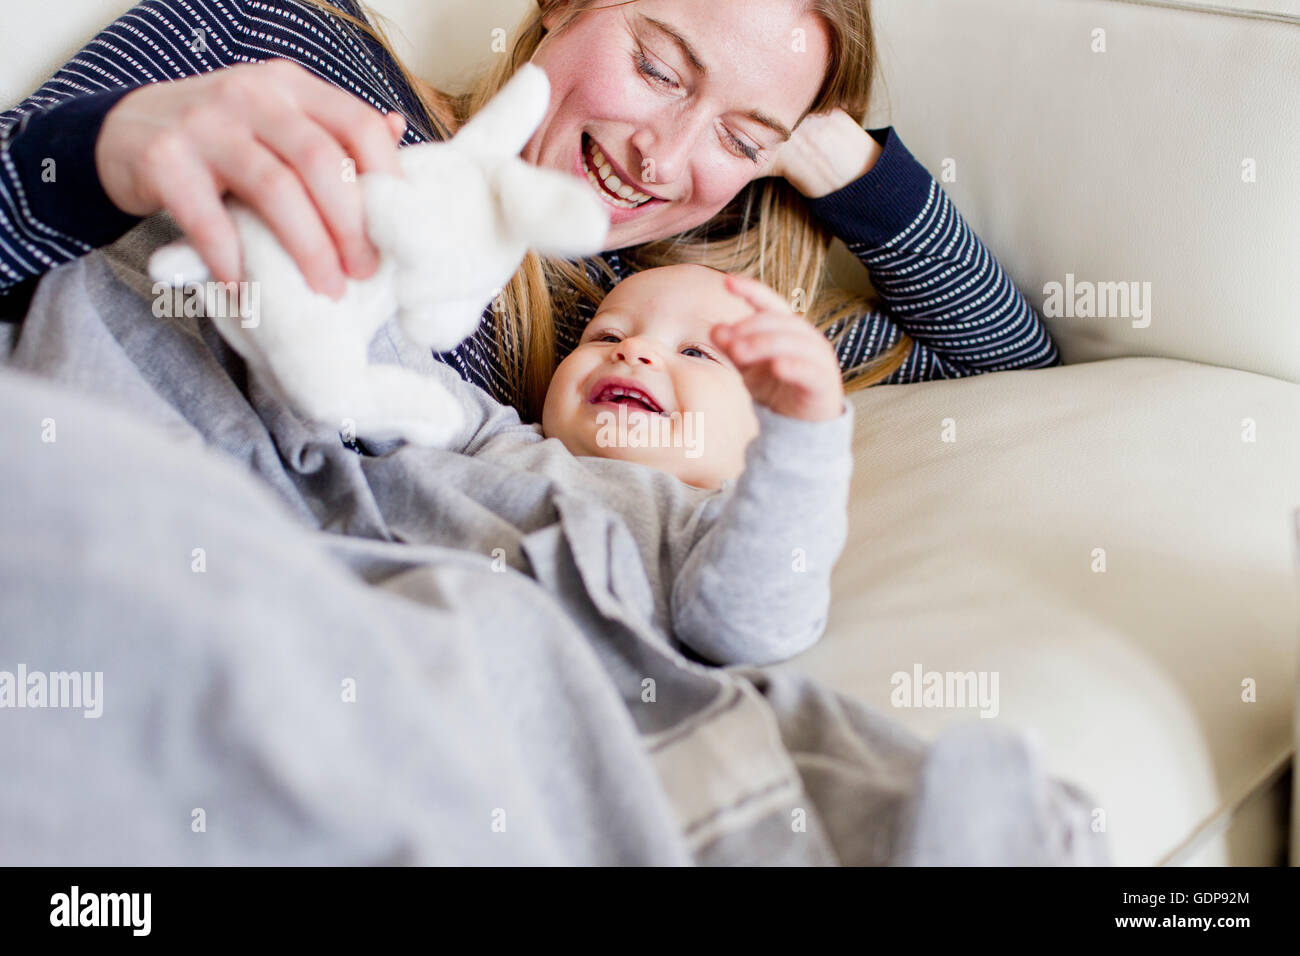 Babymädchen und Mutter mit Spielzeug spielen Kaninchen auf sofa Stockfoto